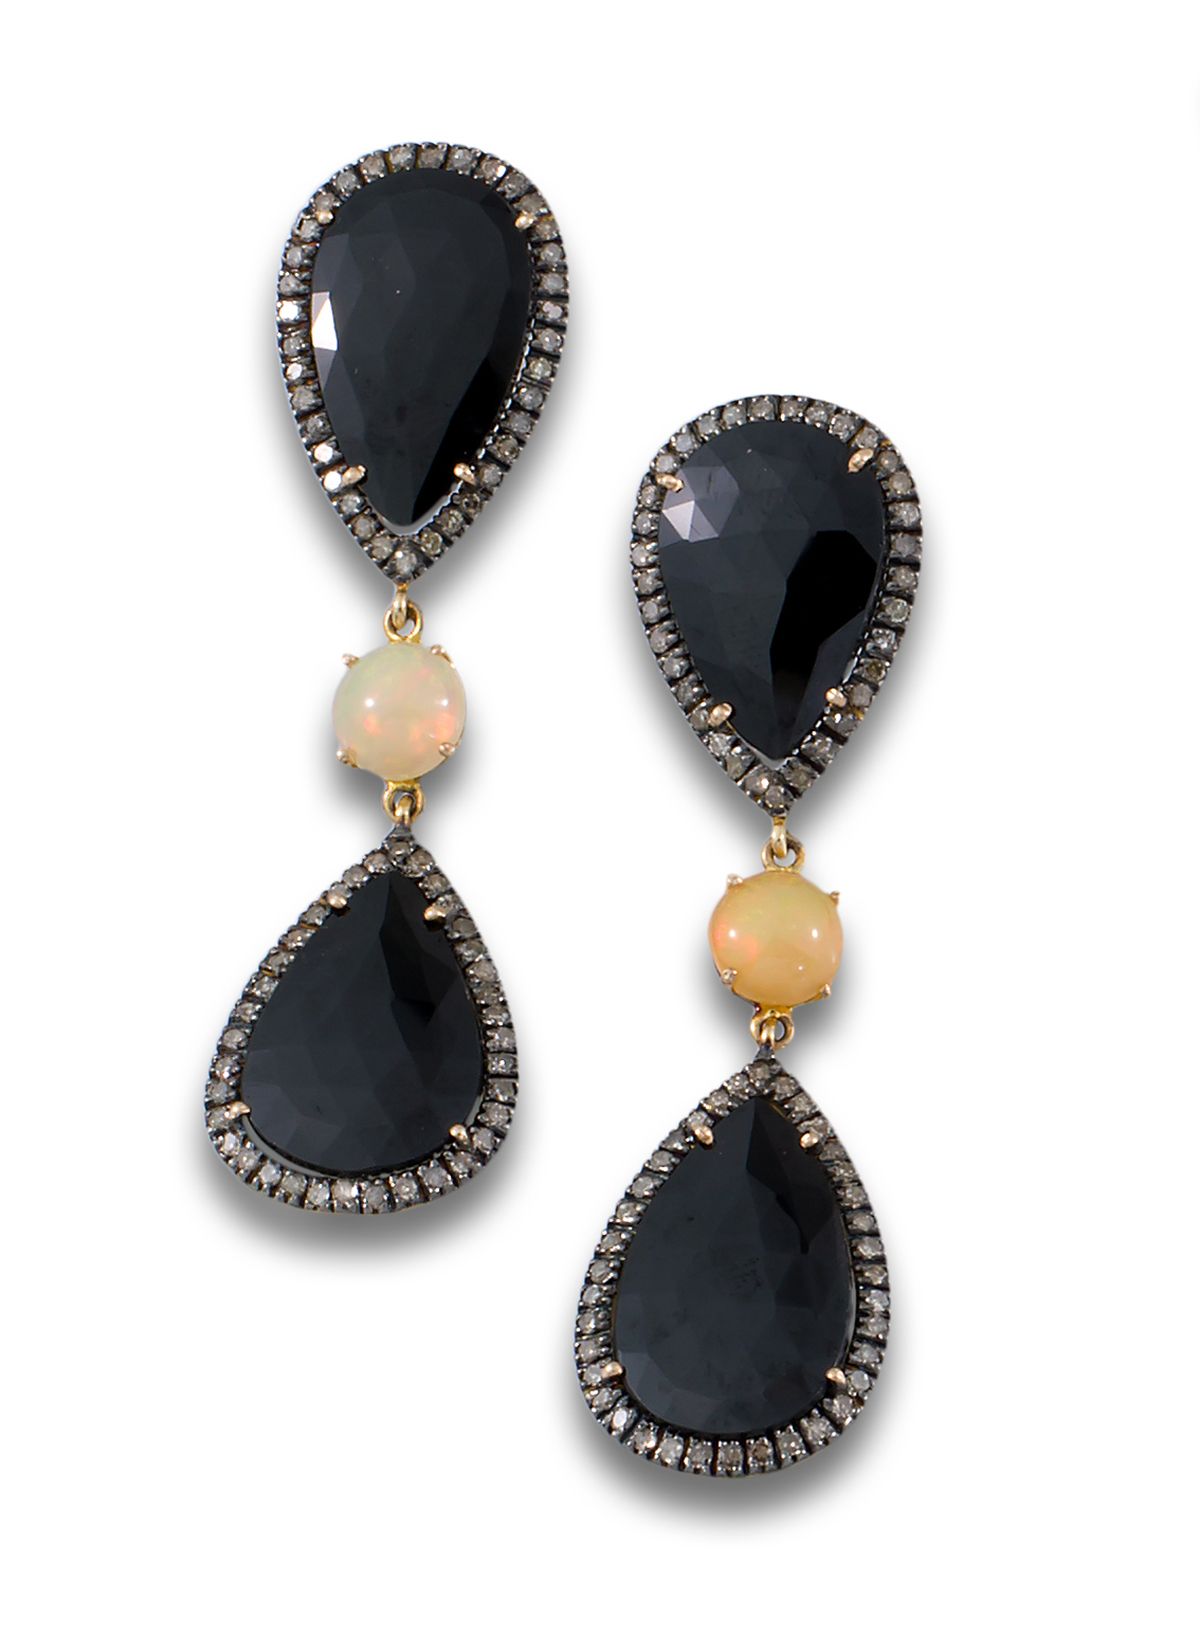 SILVER GOLD DIAMOND EARRINGS 1.68CTS OPA ZAF30 Long earrings Jaipur origin 22kts&hellip;